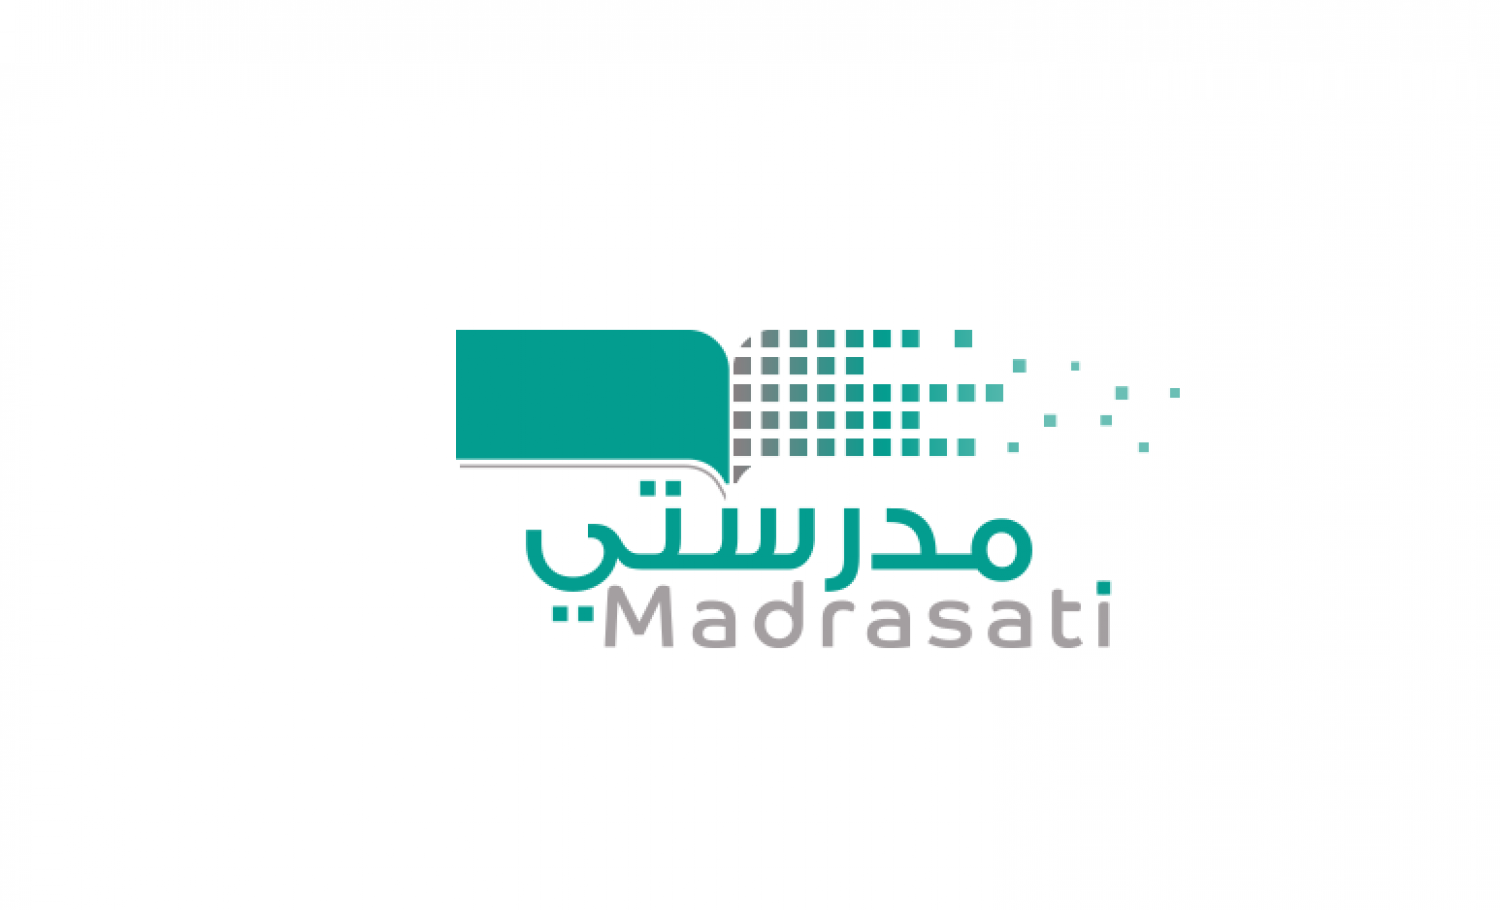 here رابط madrasati office 365 منصة مدرستي التعليمية لفتح حصص اليوم 22 مارس 2021 الافتراضية لطلاب الترم الثاني 1442